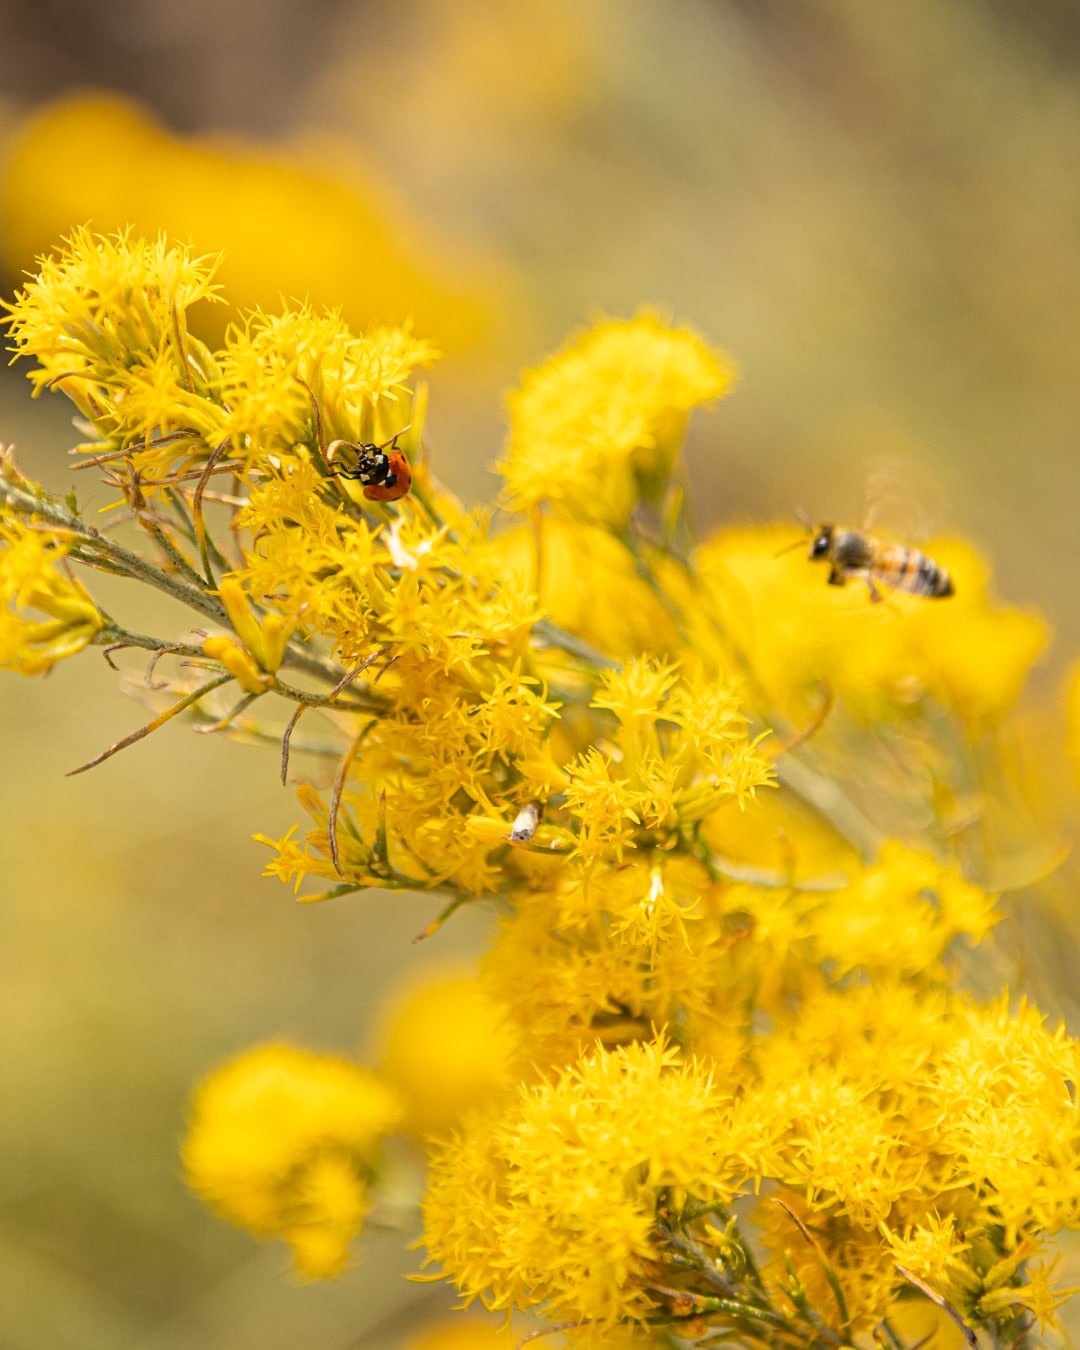 Bee and ladybug in yellow flowers